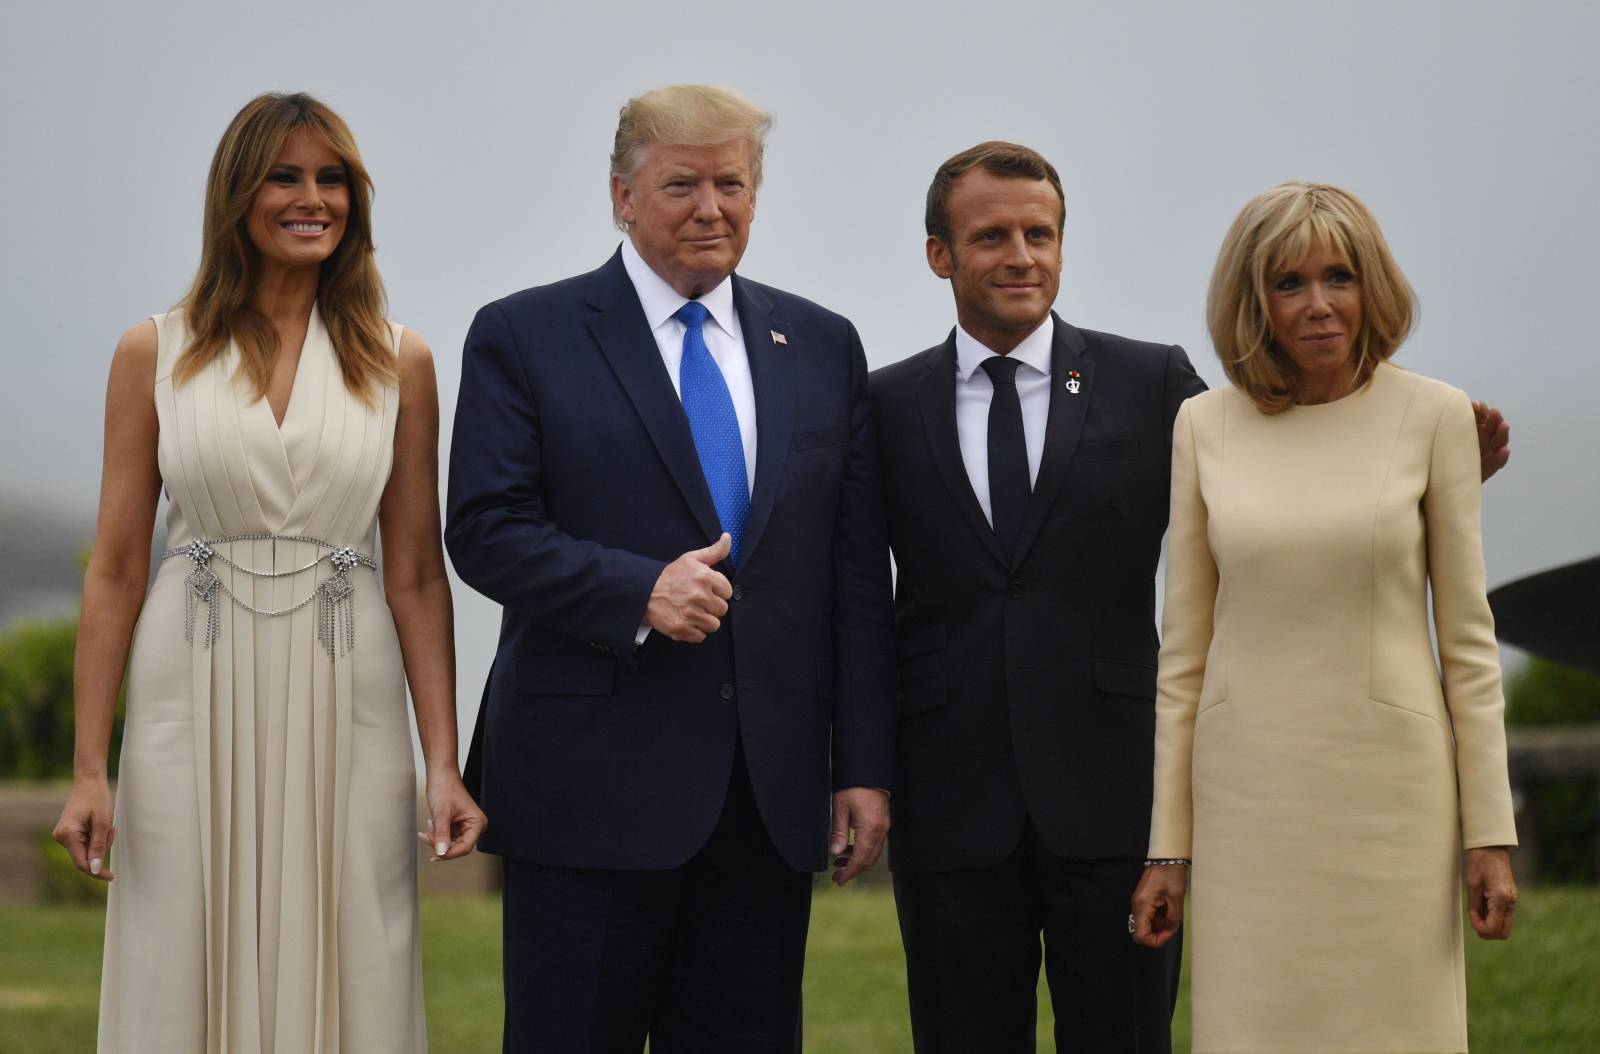 G7 Summit 2019